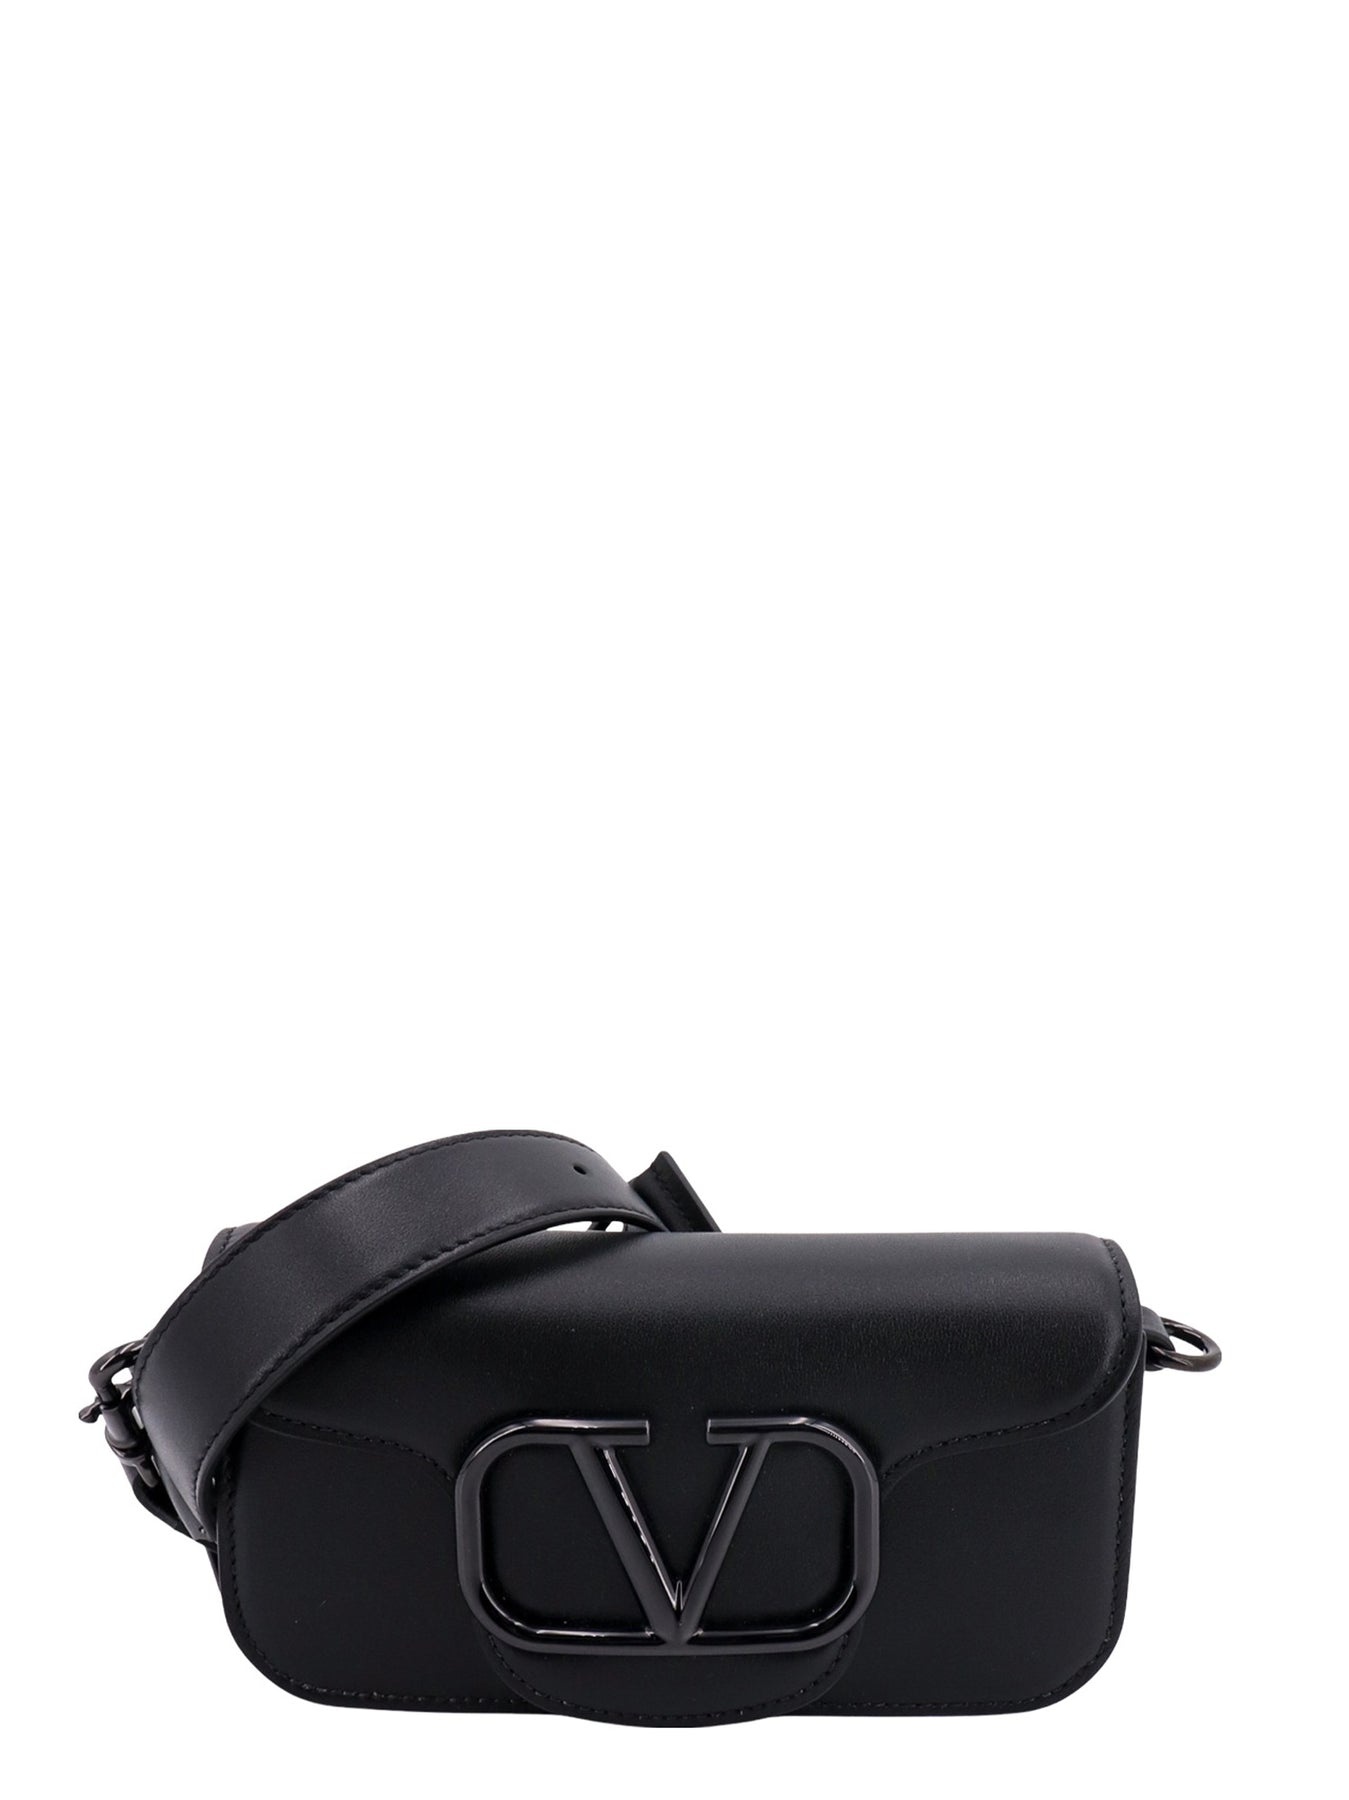 Leather shoulder bag with VLogo Signature detail - 1